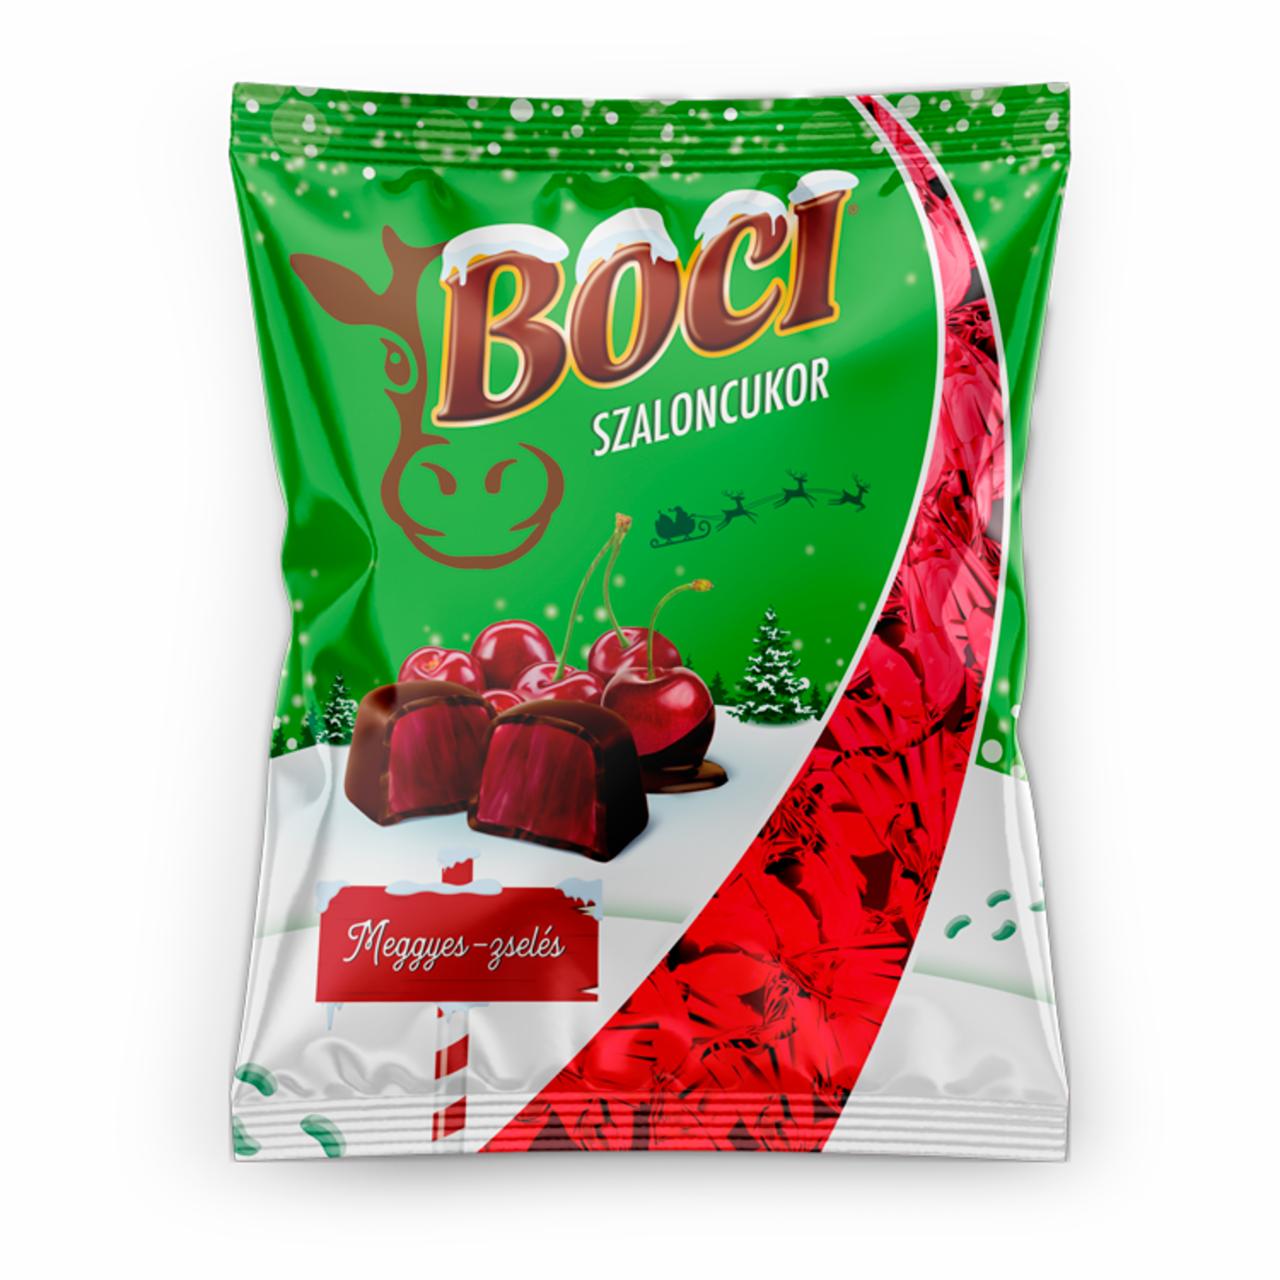 Képek - Boci meggyes ízesítésű zselés szaloncukor étcsokoládéval mártva 380 g